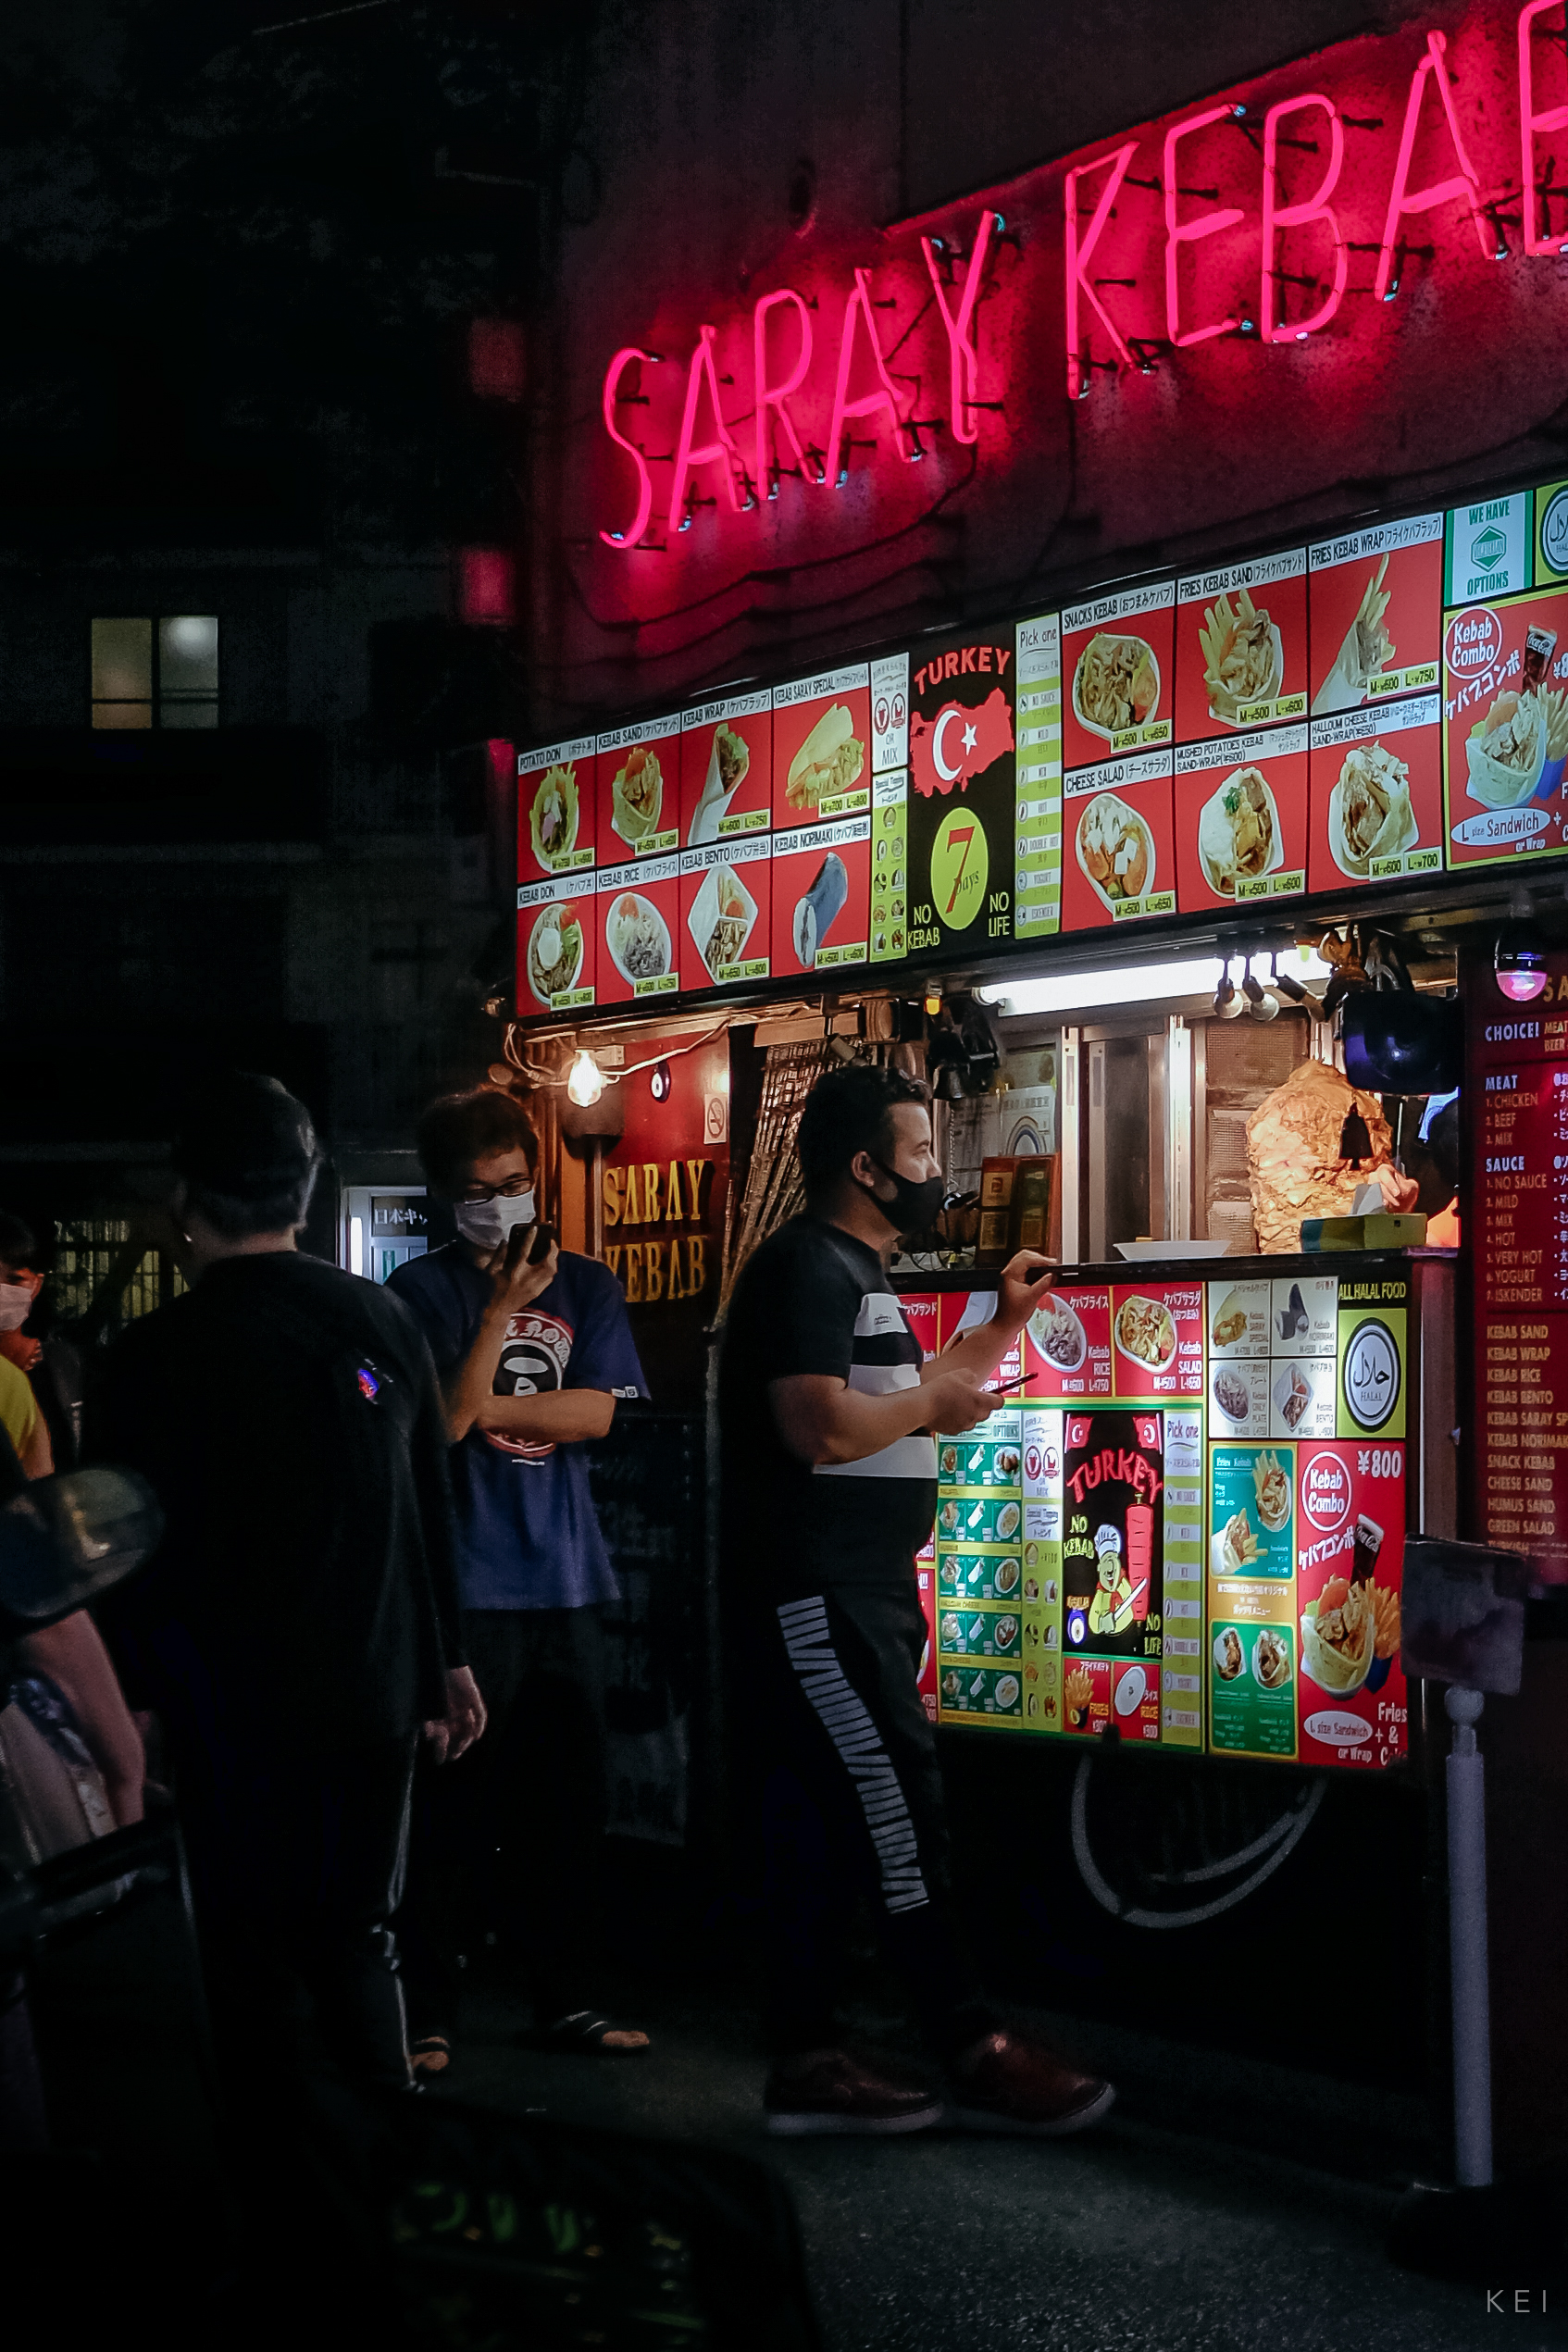 大久保車站旁的沙威瑪專賣店 saray kebab